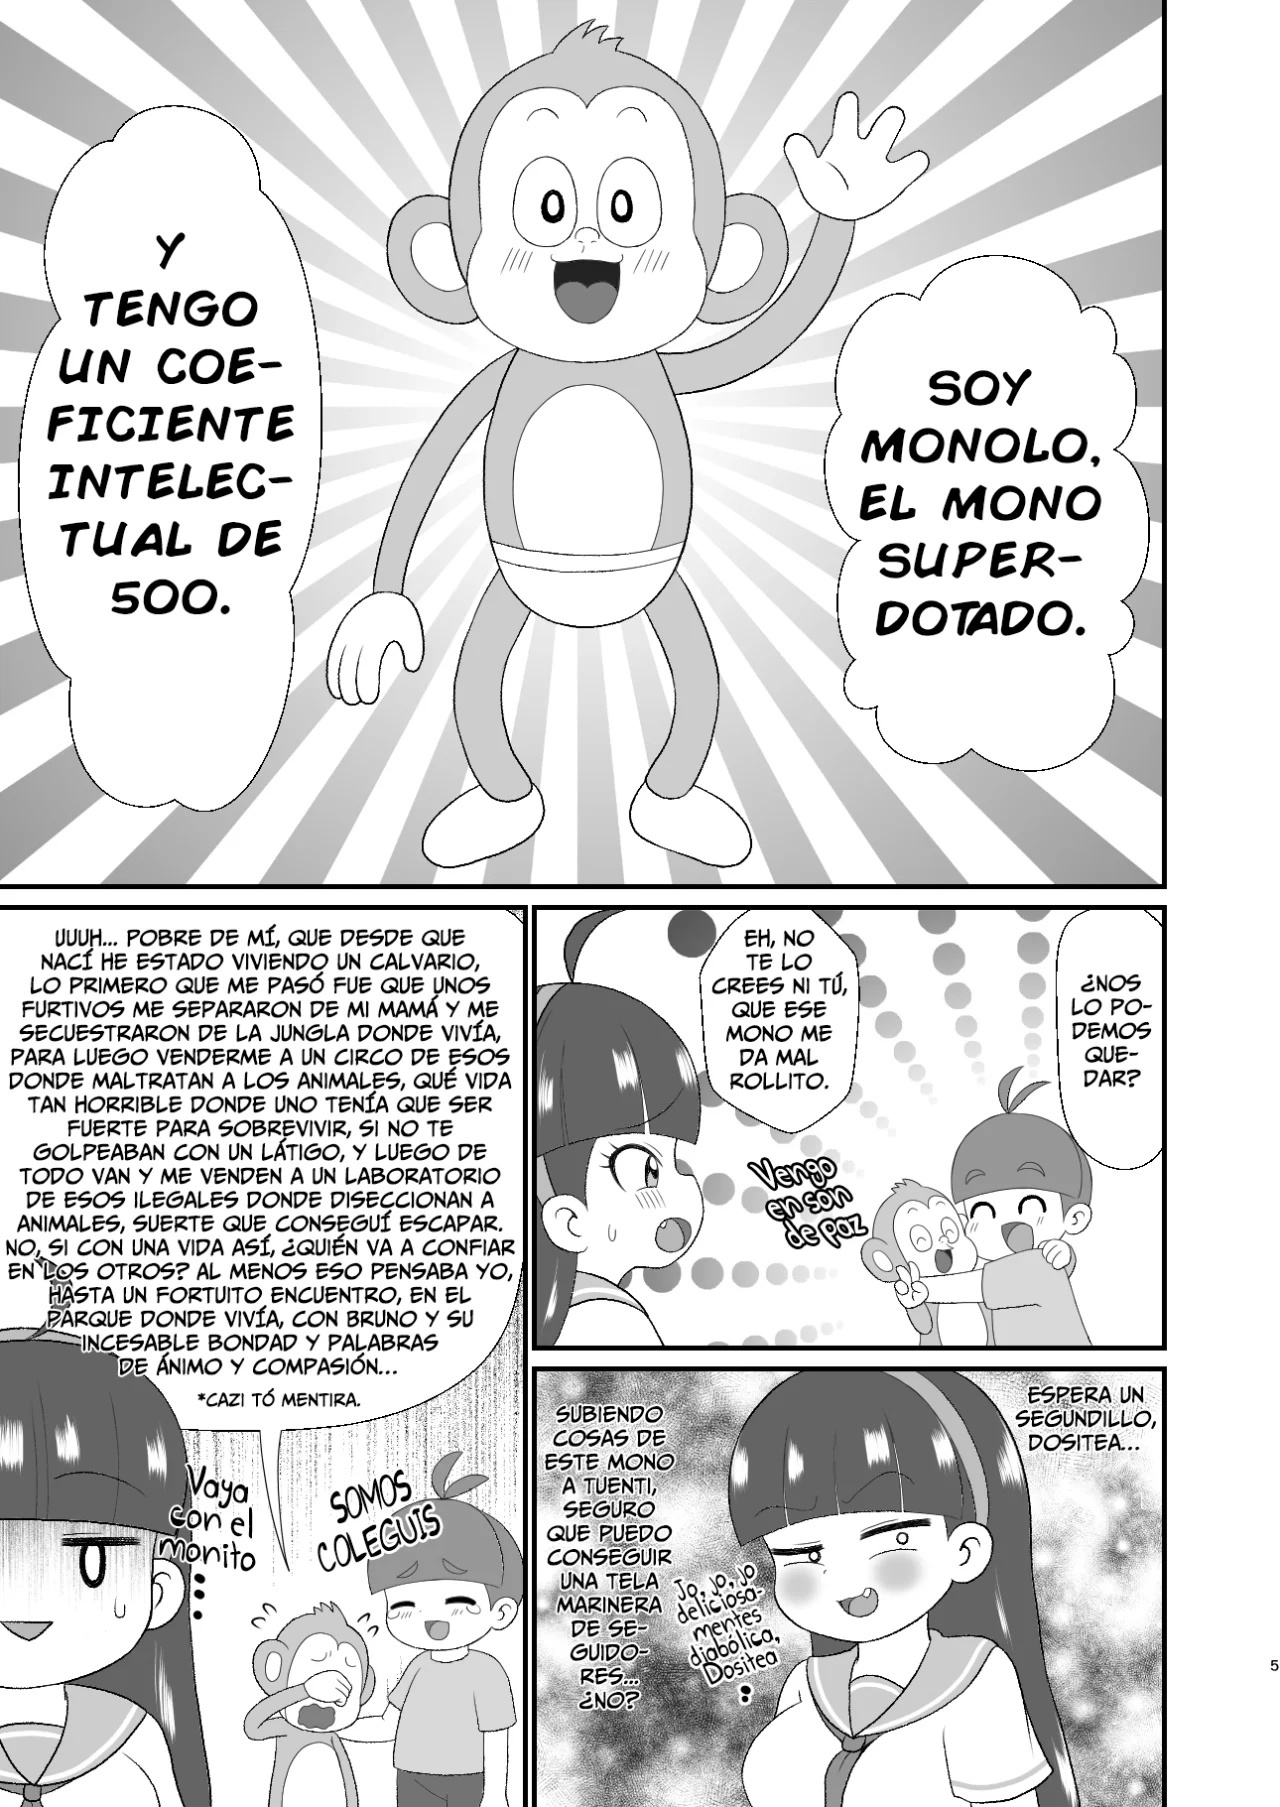 Monolo El Mono SuperDotado - 3